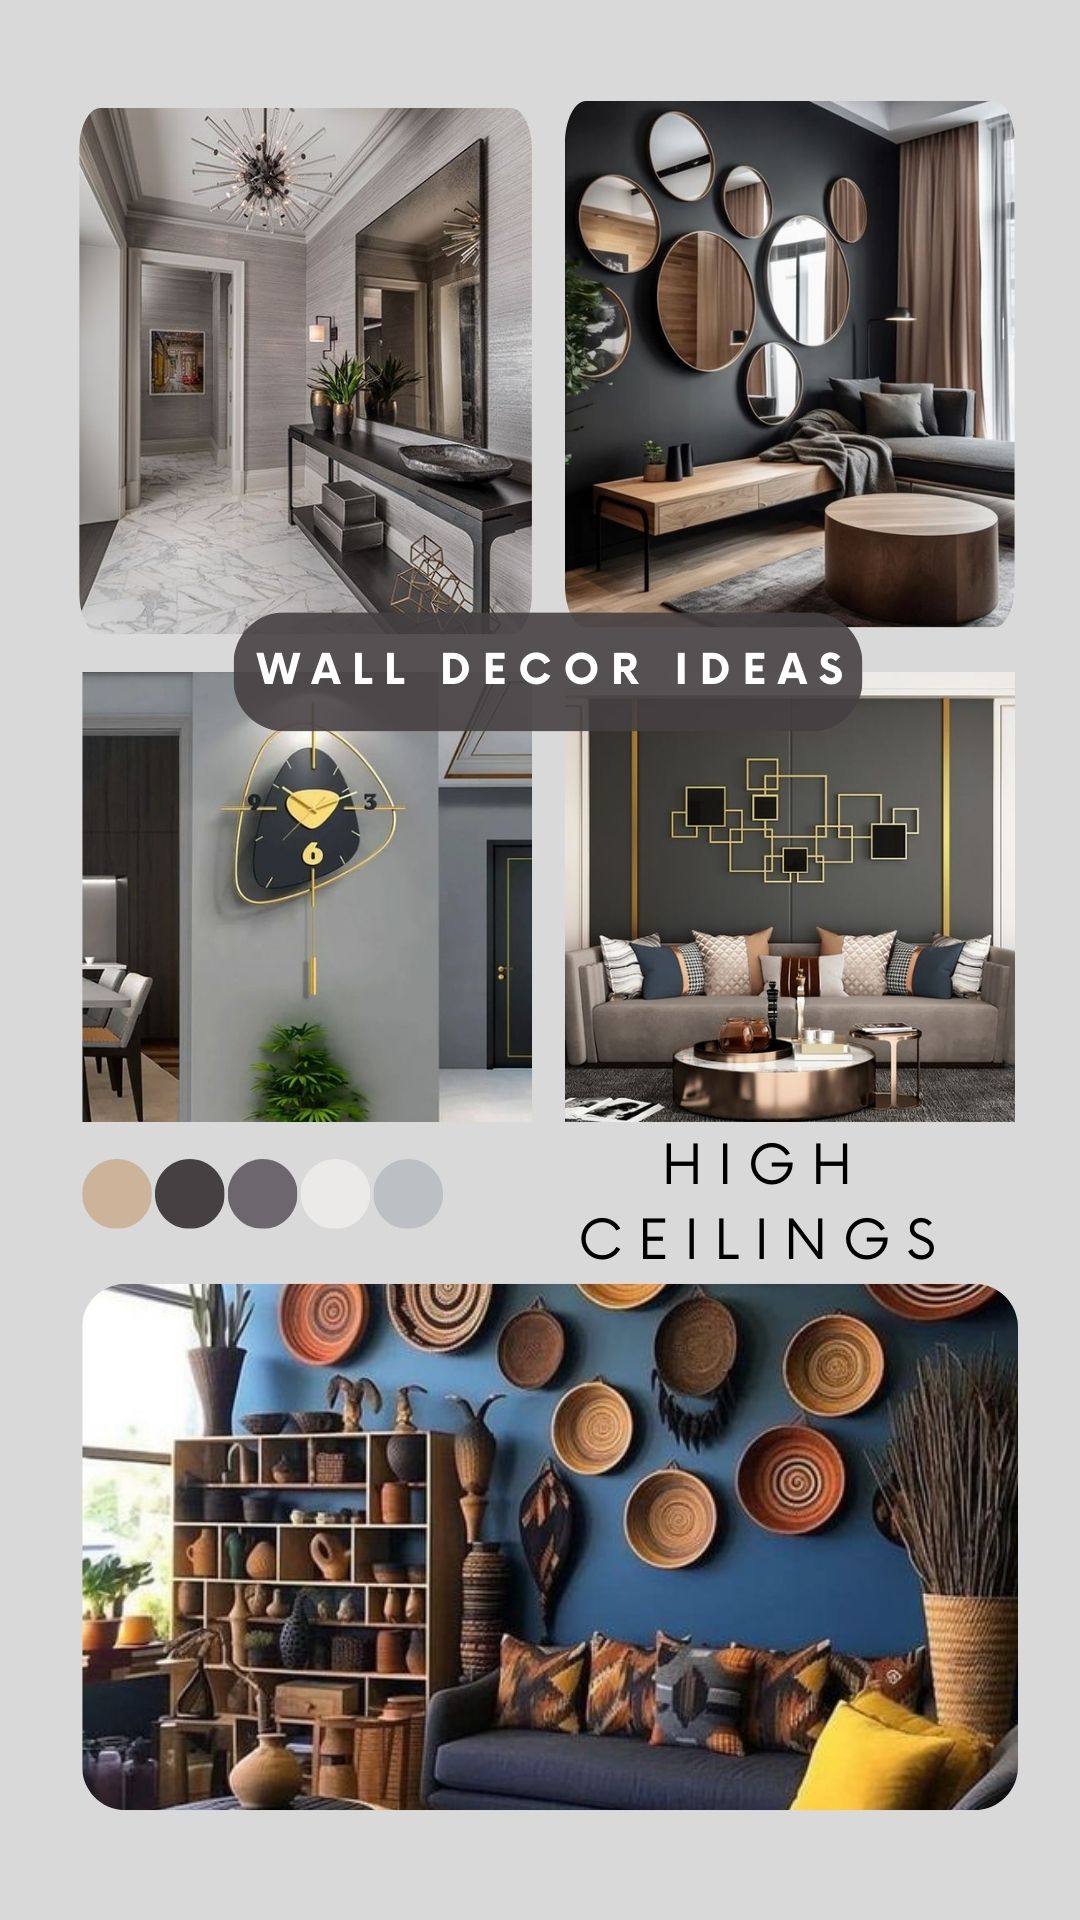 10 Wall Decor Ideas For High Ceilings